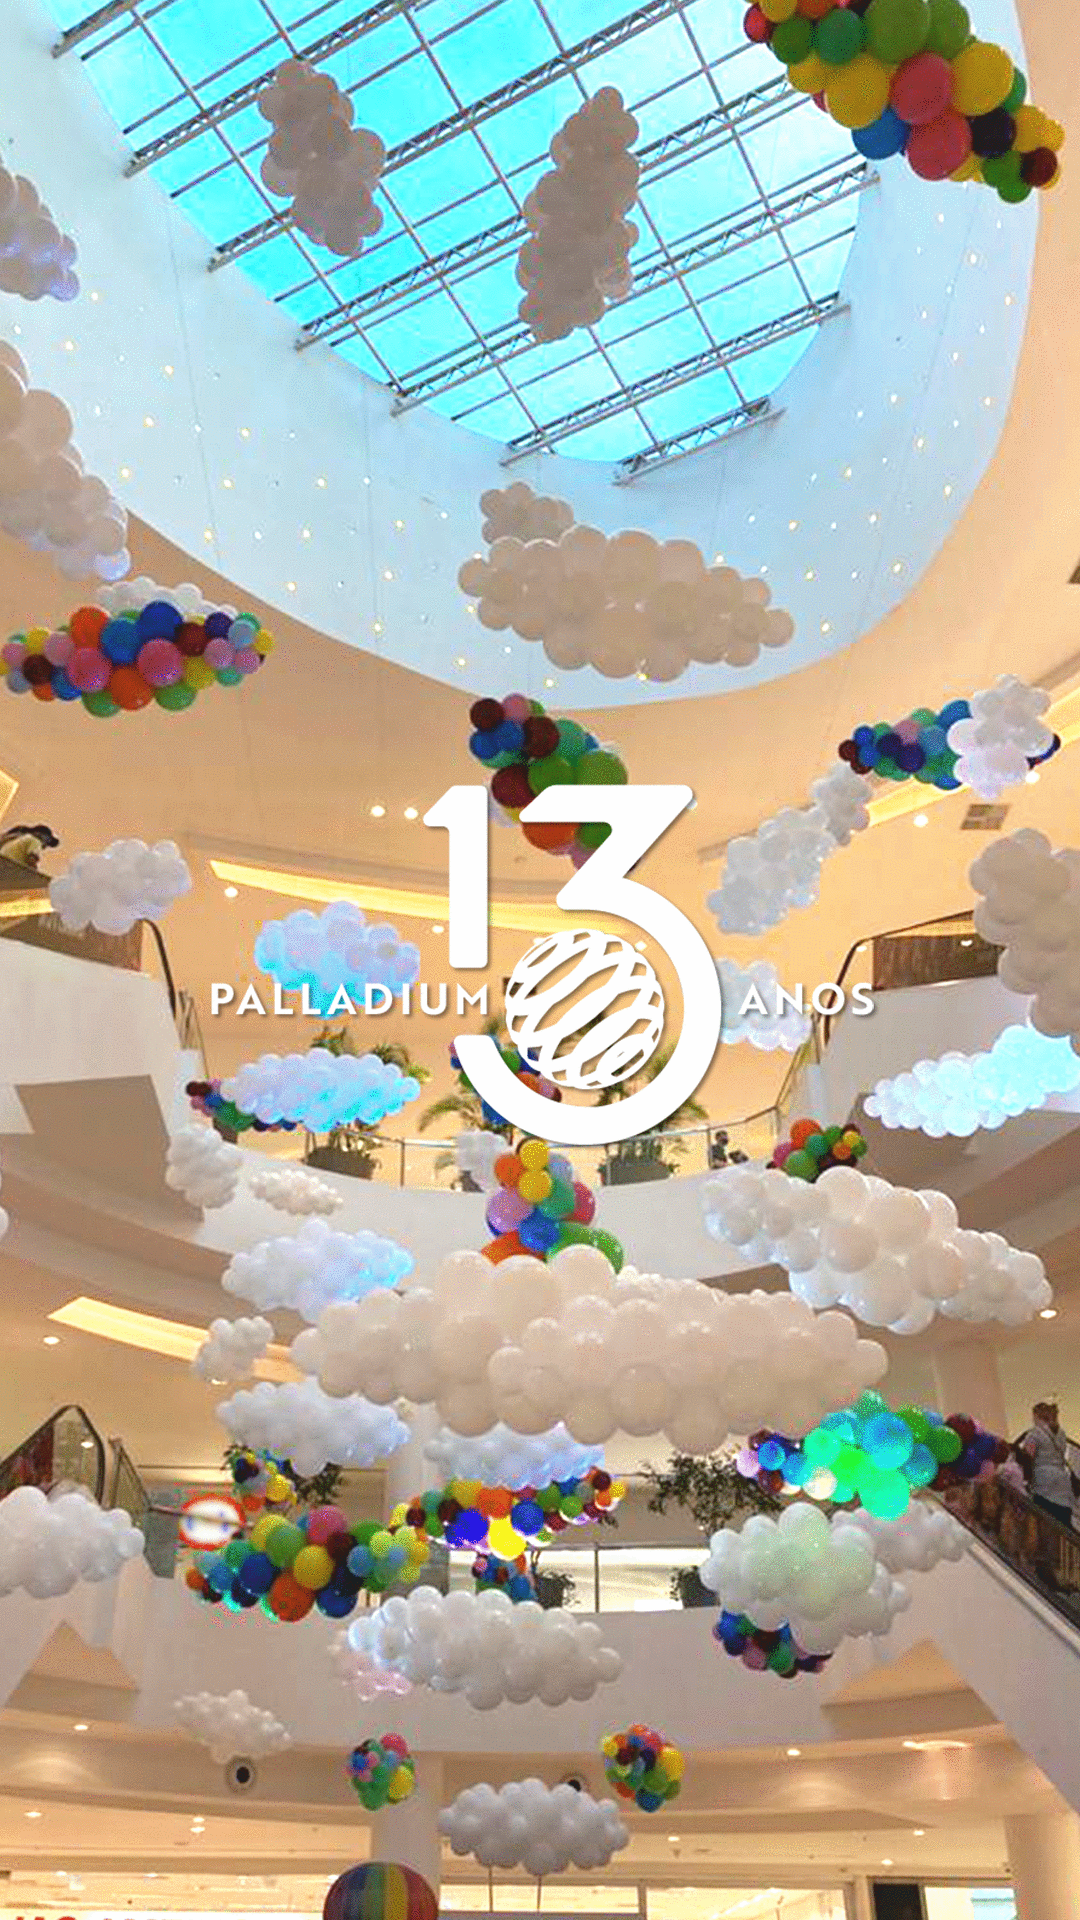 Palladium completa 13 anos com ação para clientes e lojistas